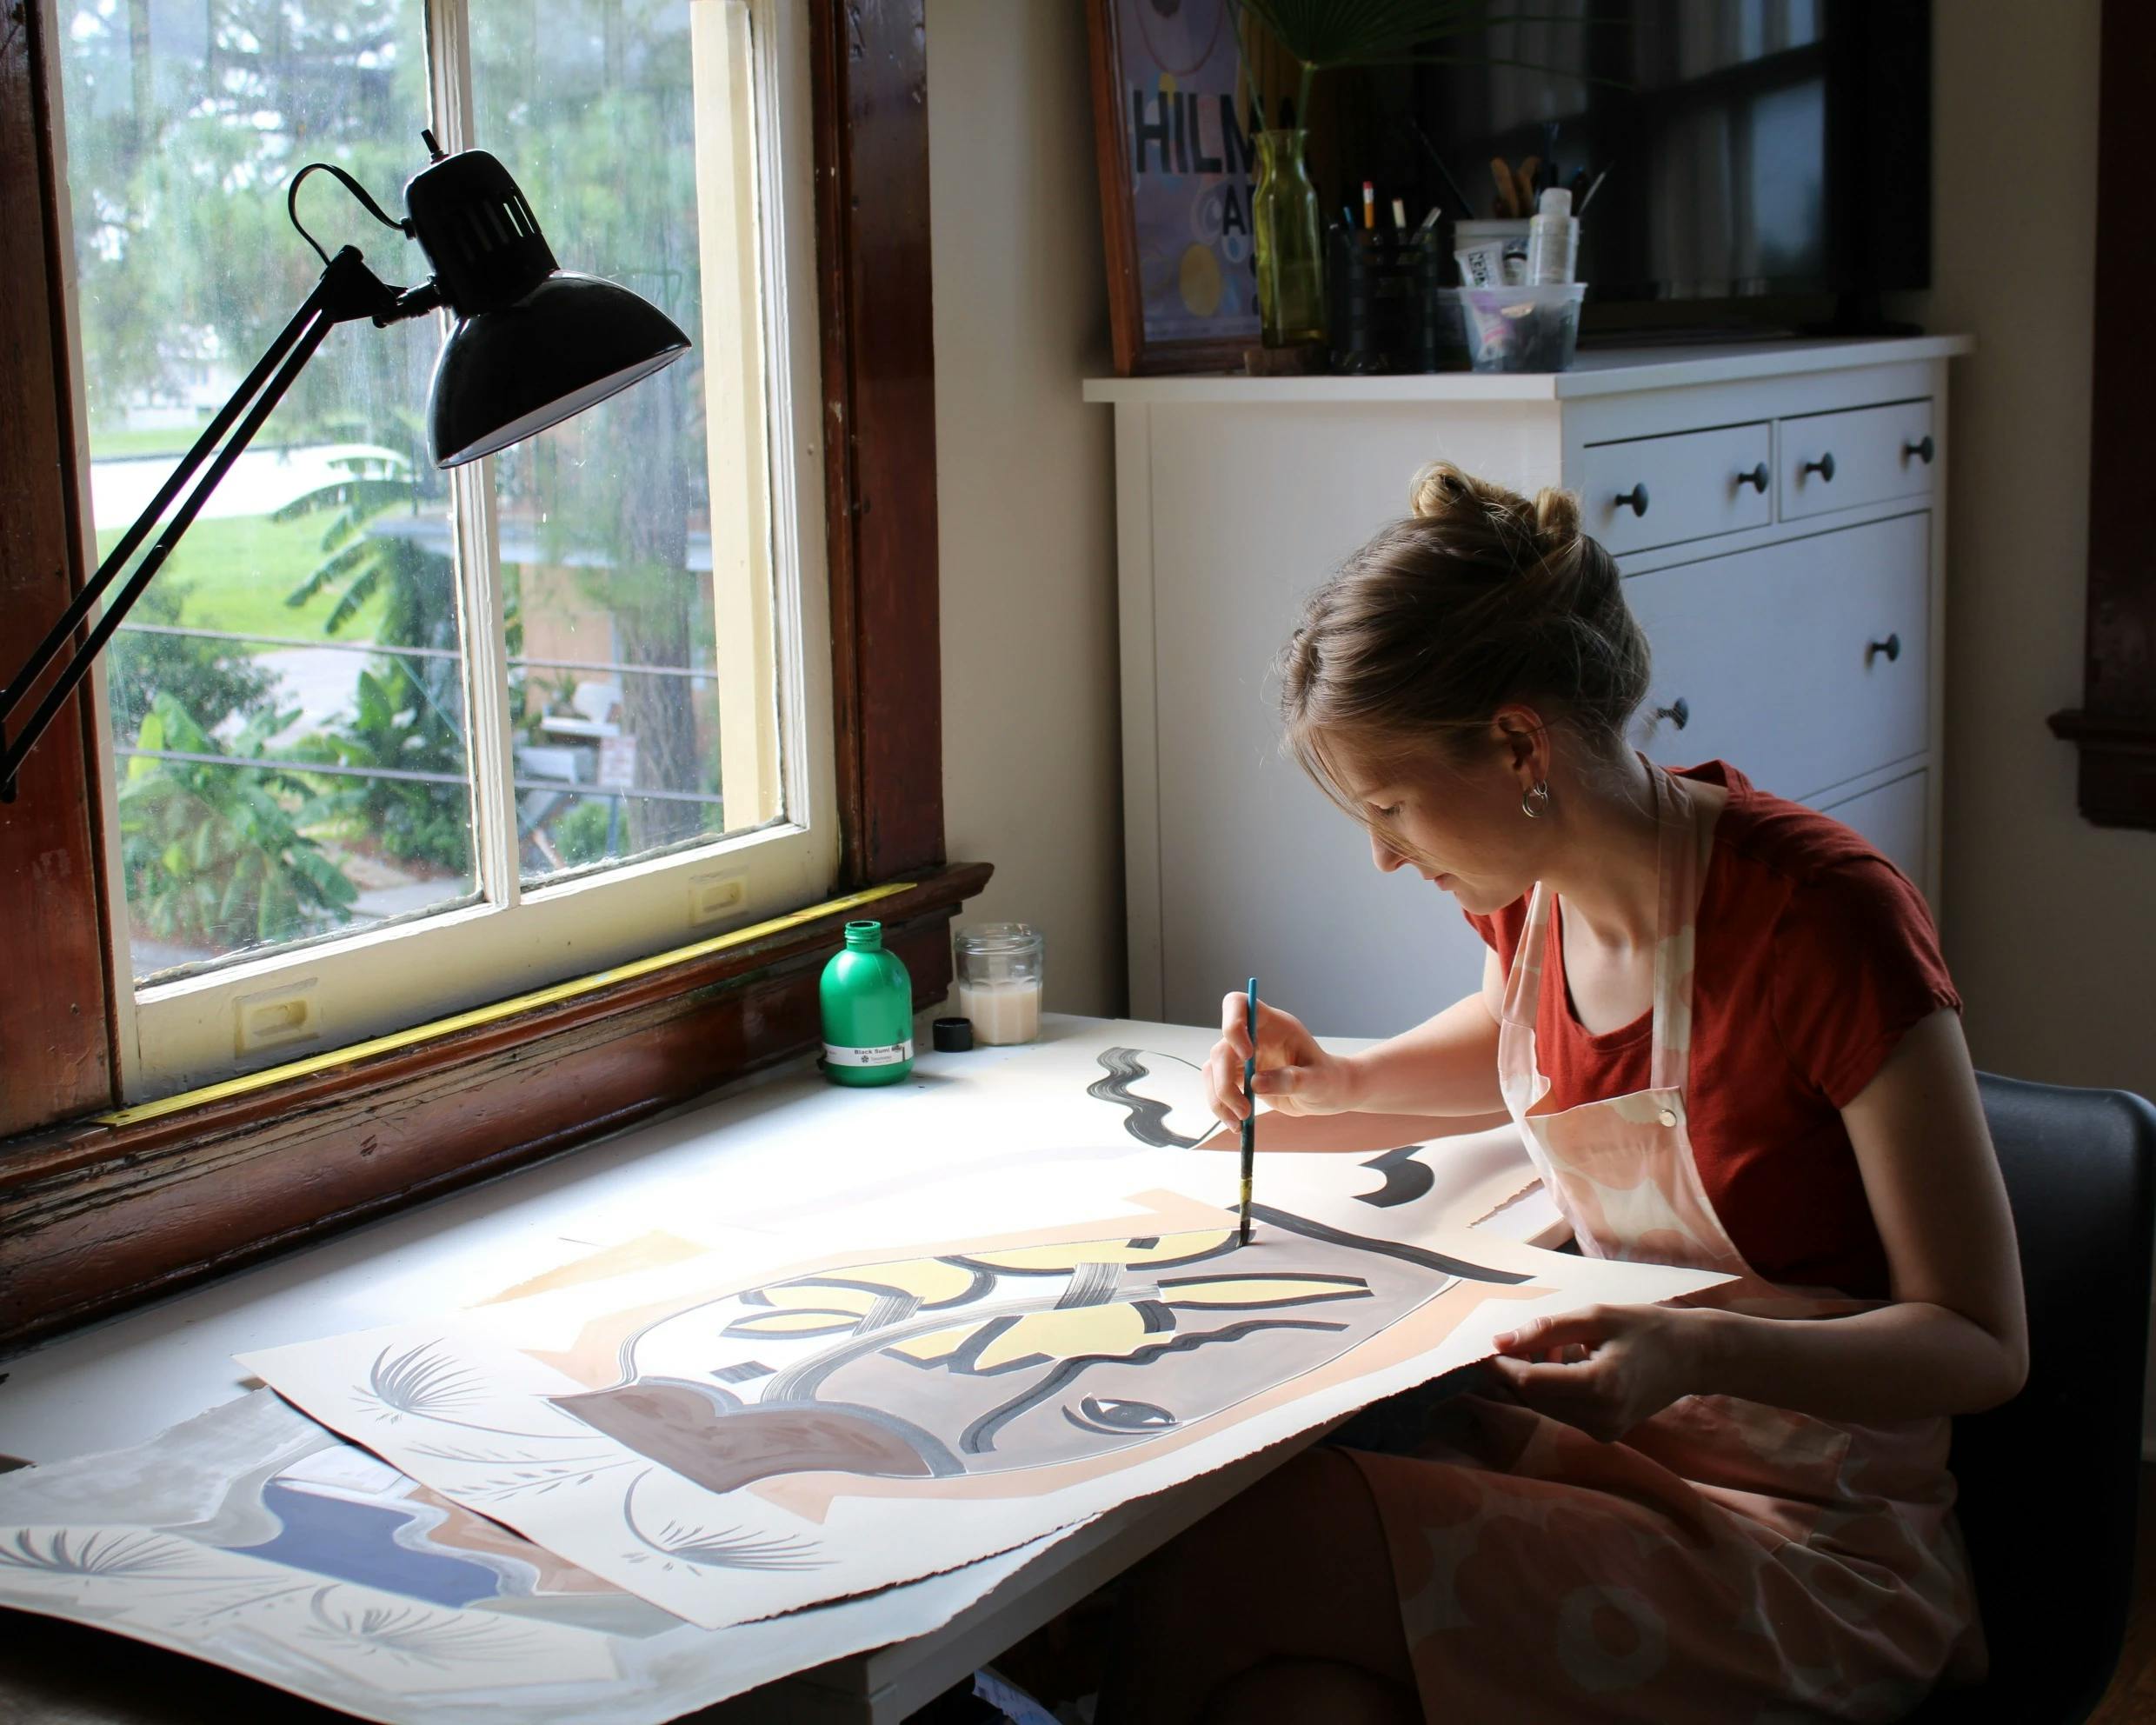 Artist Anna Koeferl working in her studio.